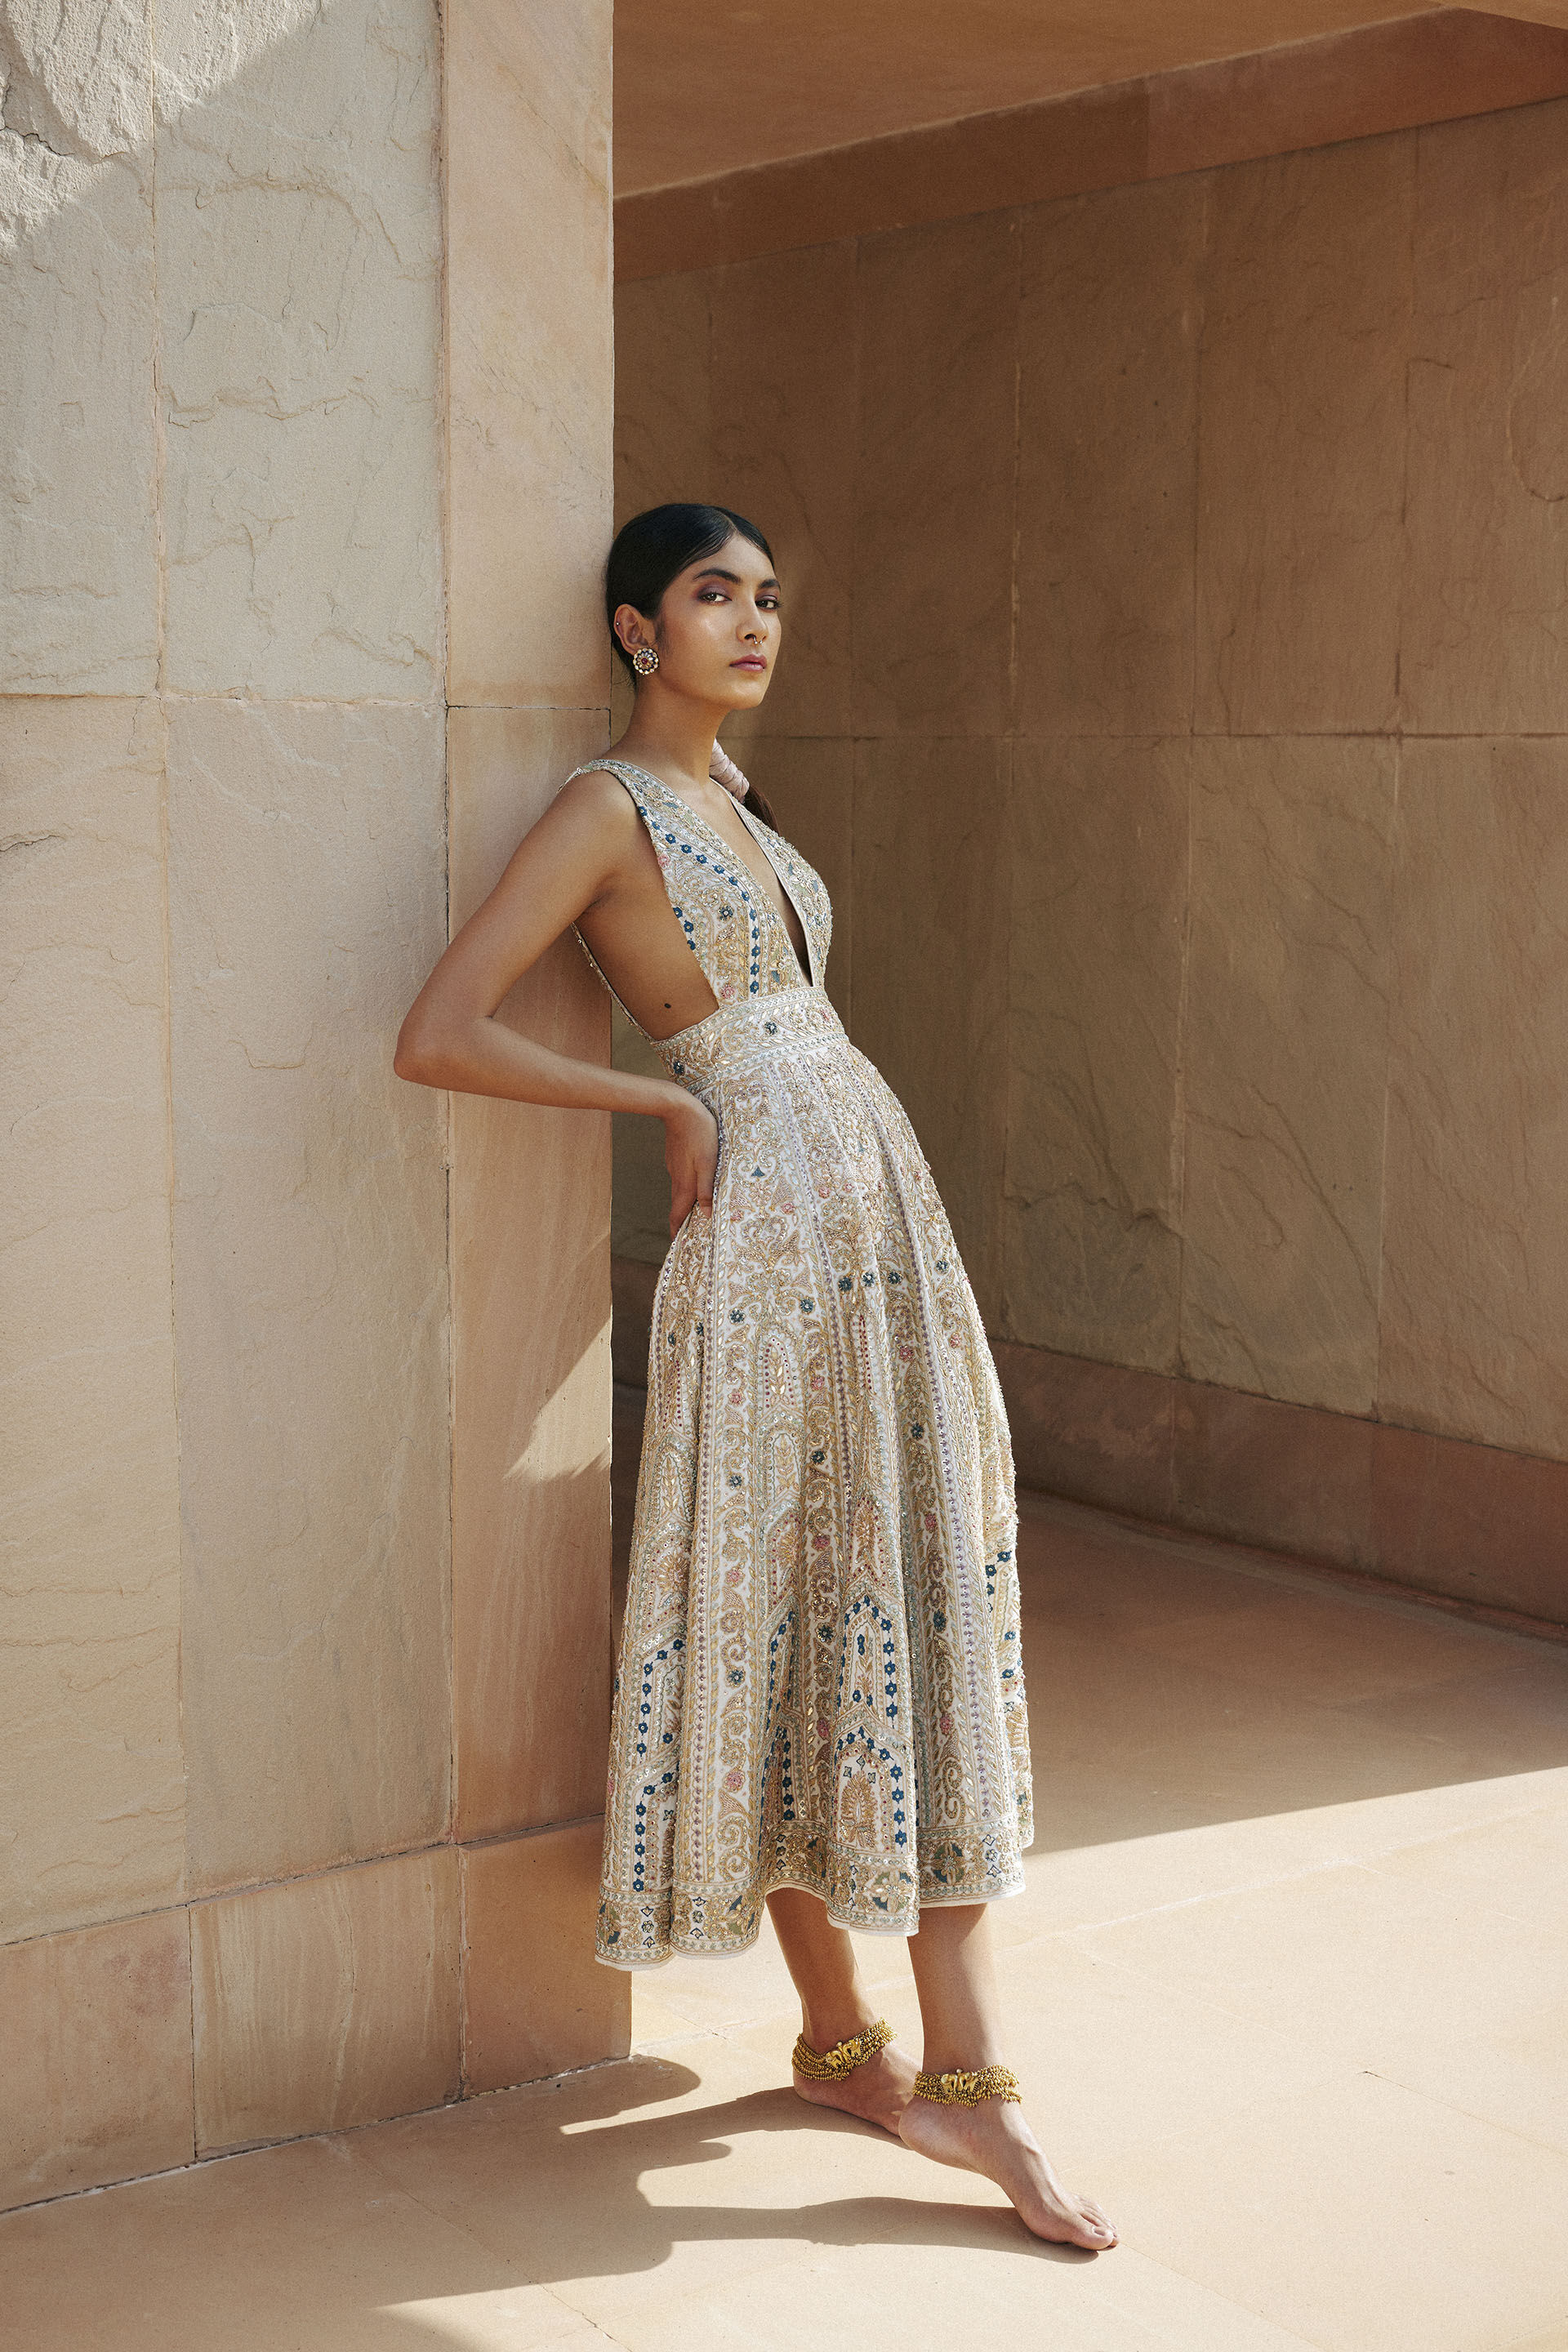 Meet Kate Middleton's Favorite Indian Fashion Designer Anita Dongre